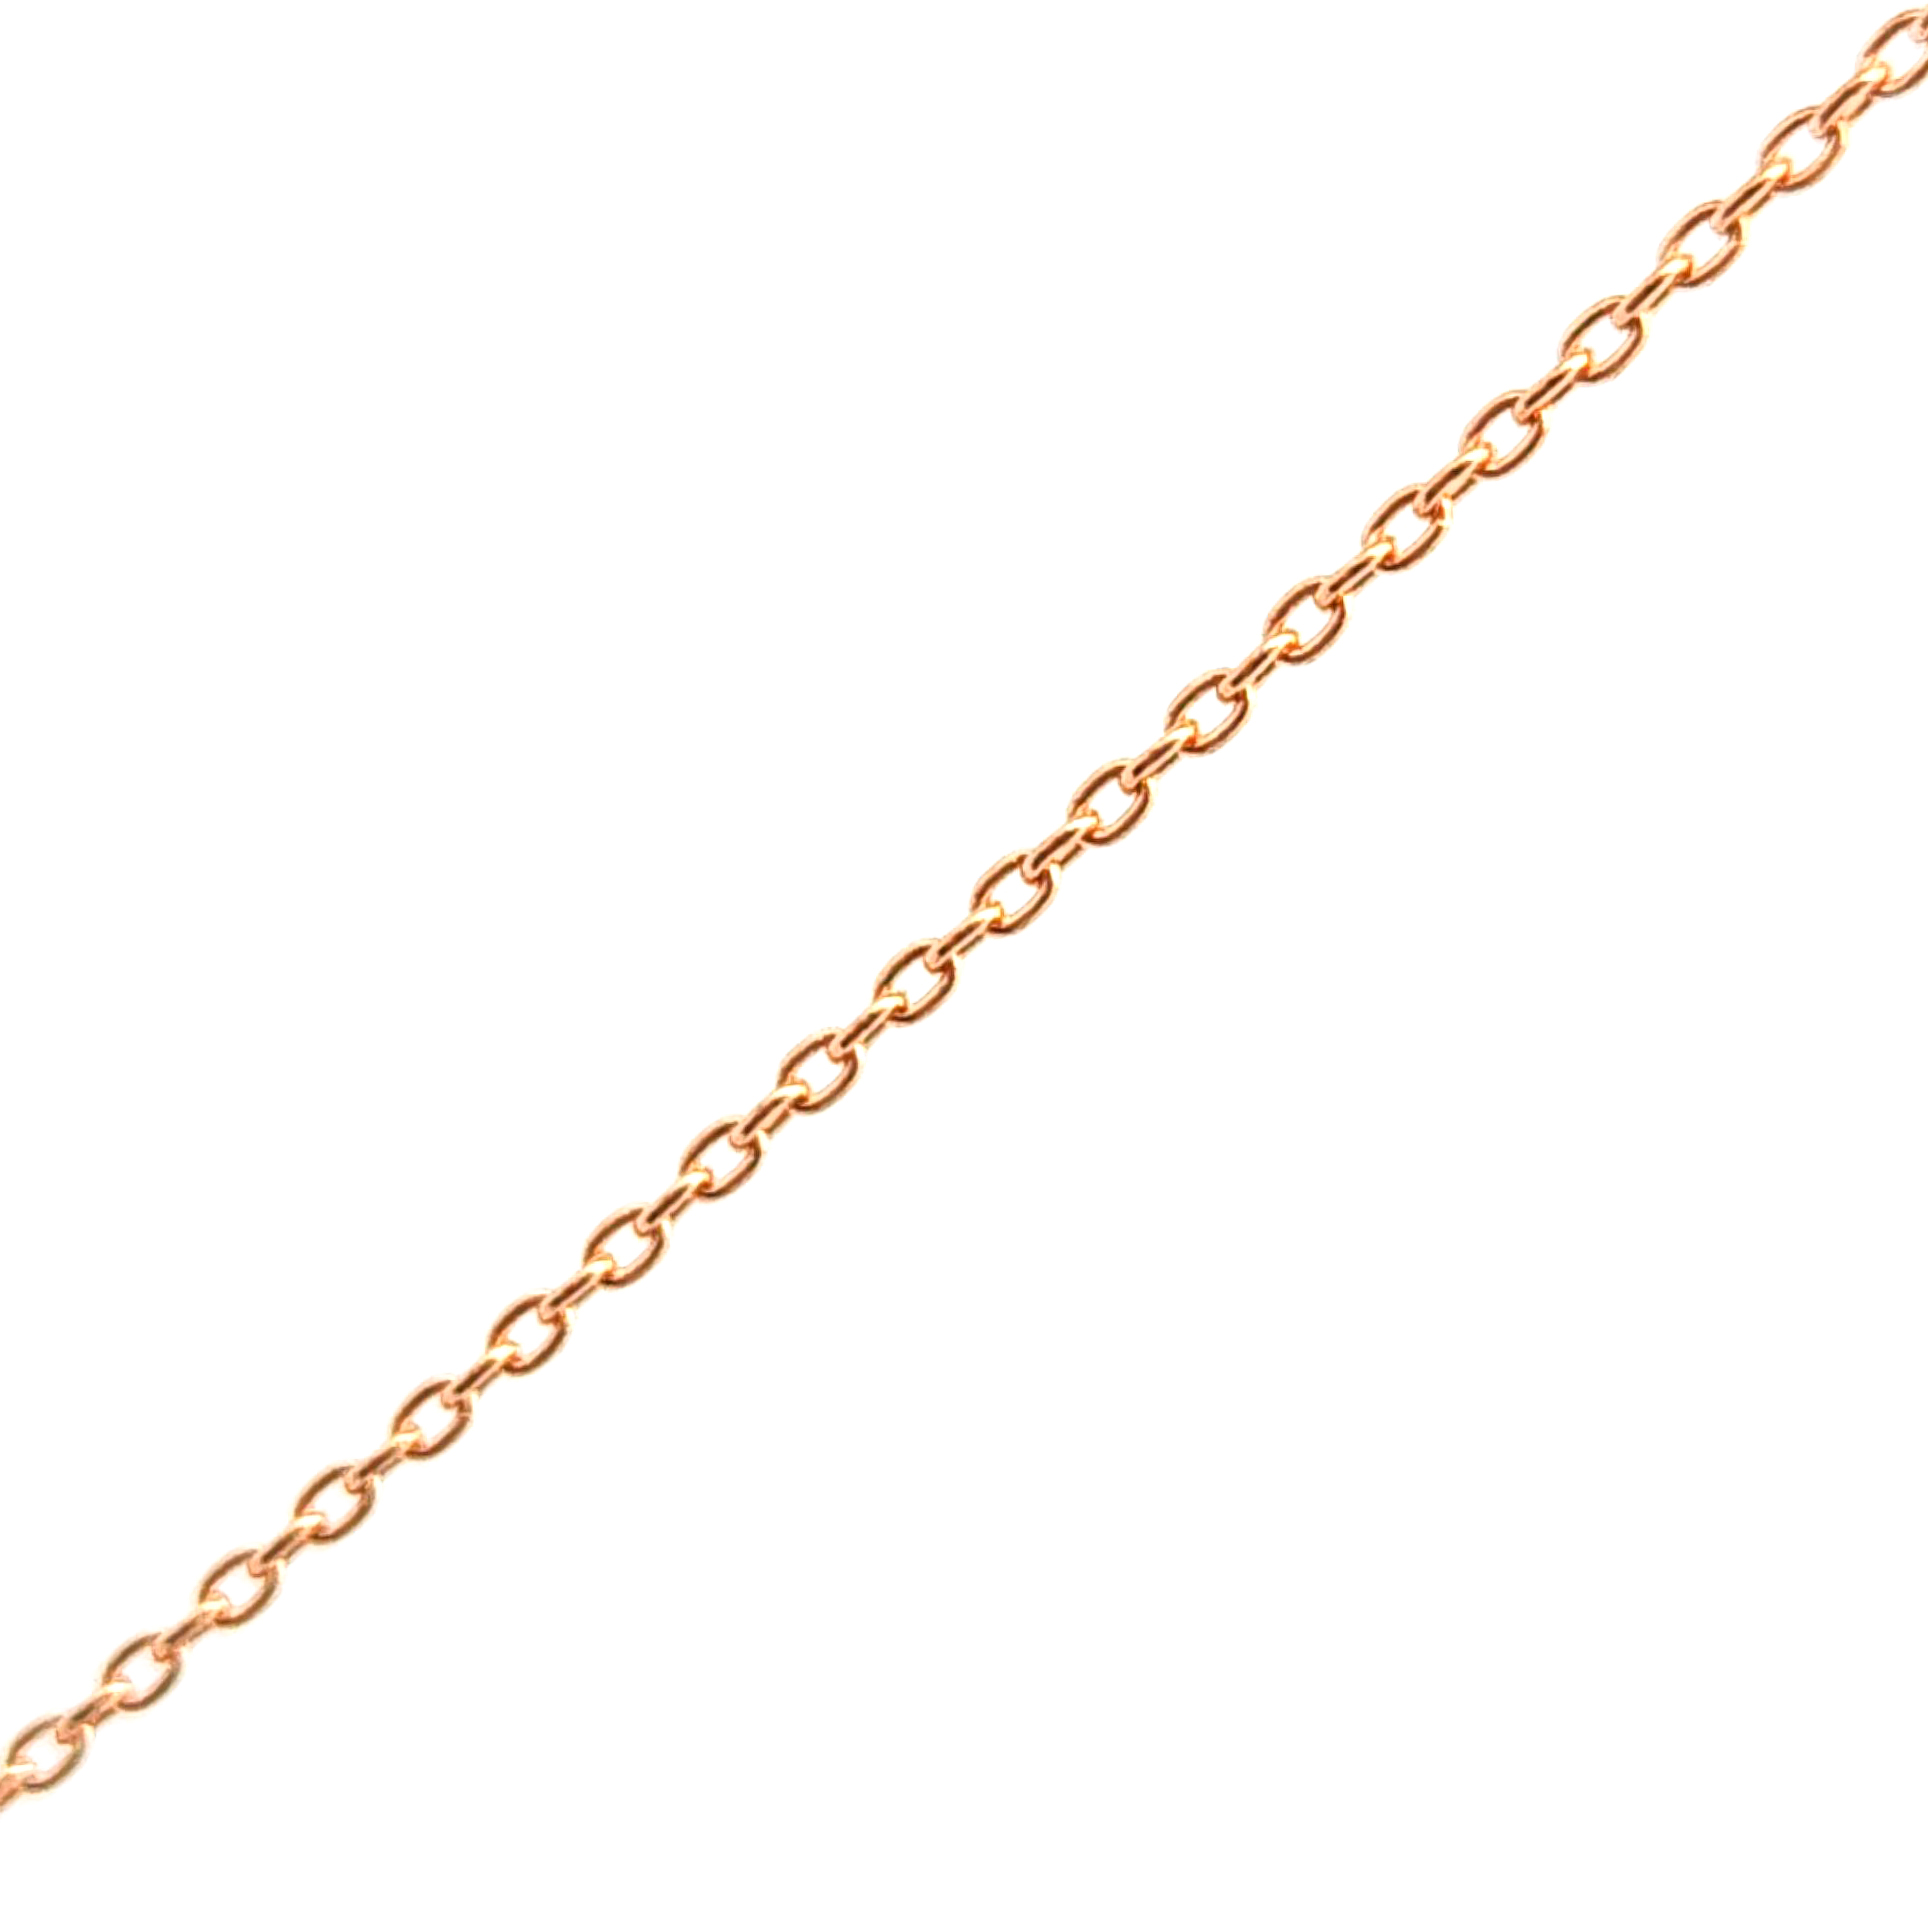 Cadena de oro 18k de eslabones simples con broche resorte, peso 1,66 grs, medida 40 cm 2